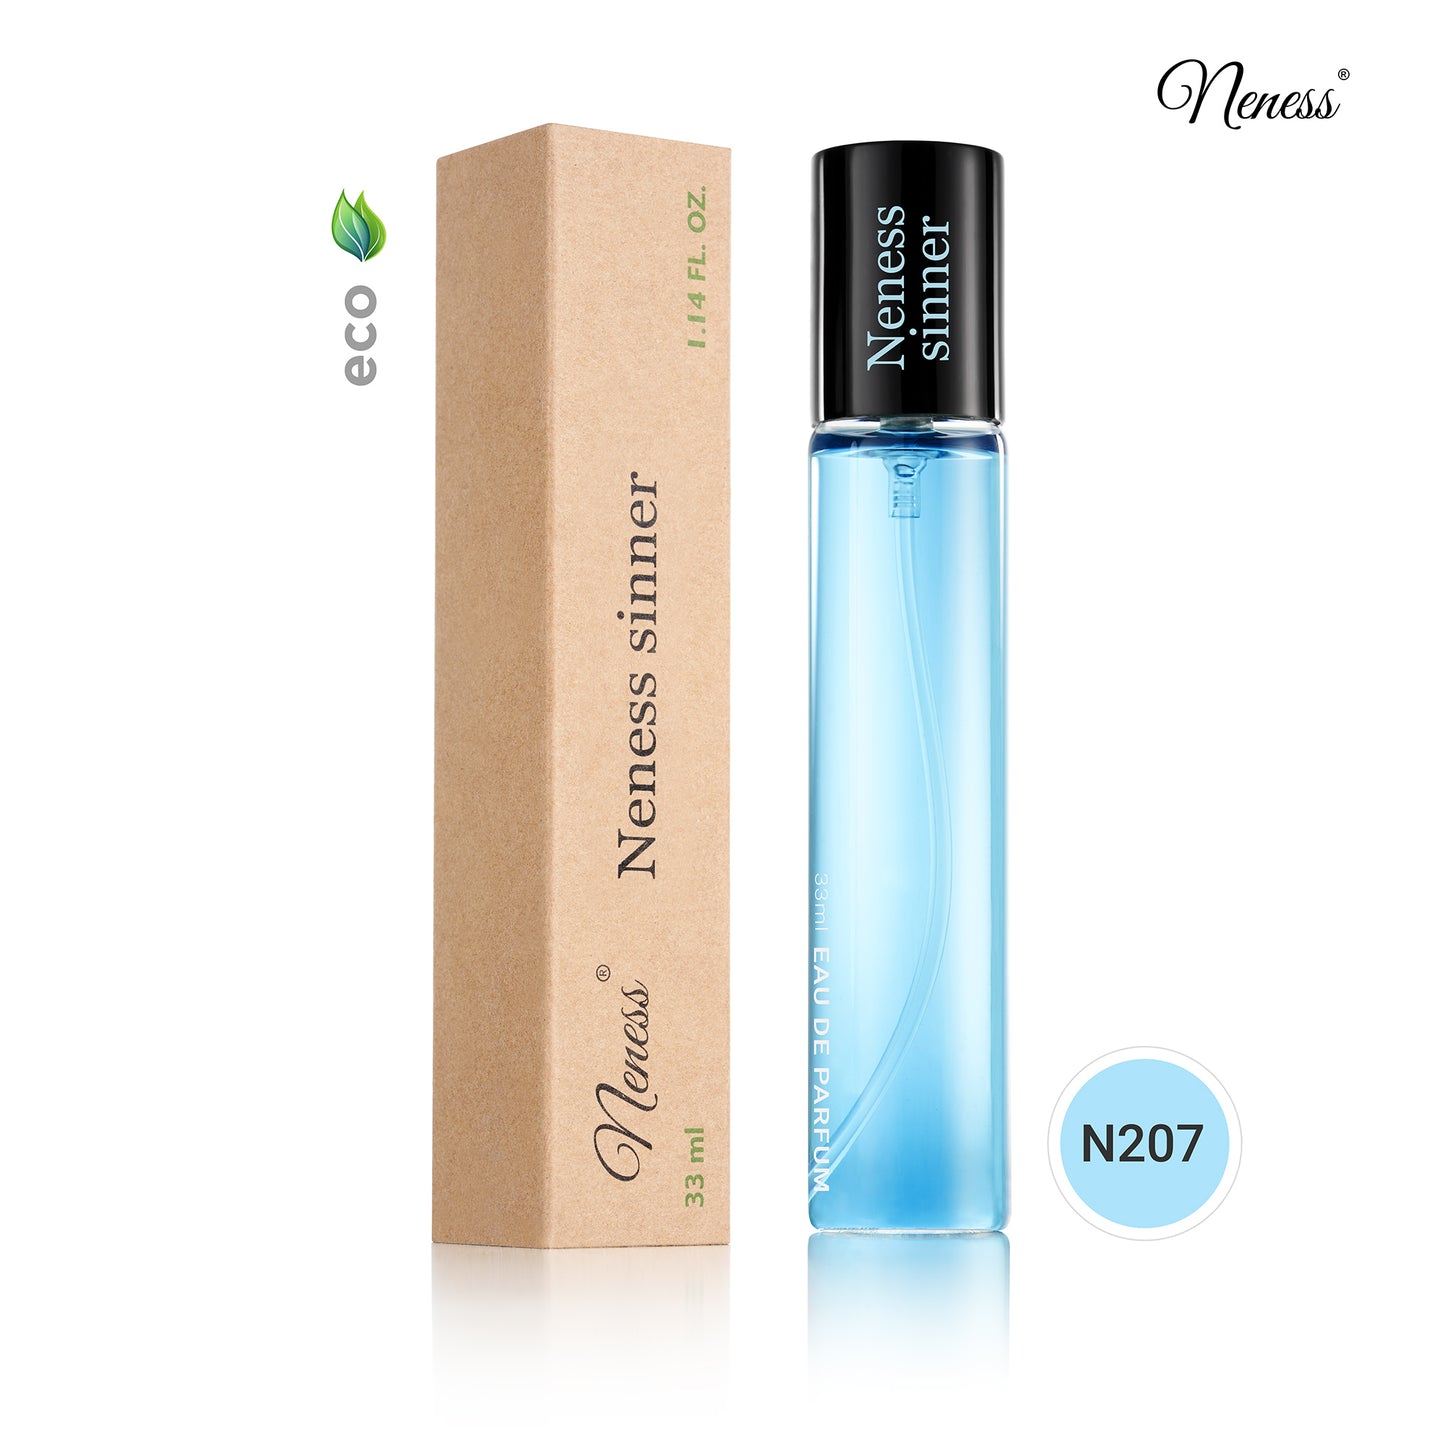 N207. Neness Sinner - 33 ml Perfumes For Men